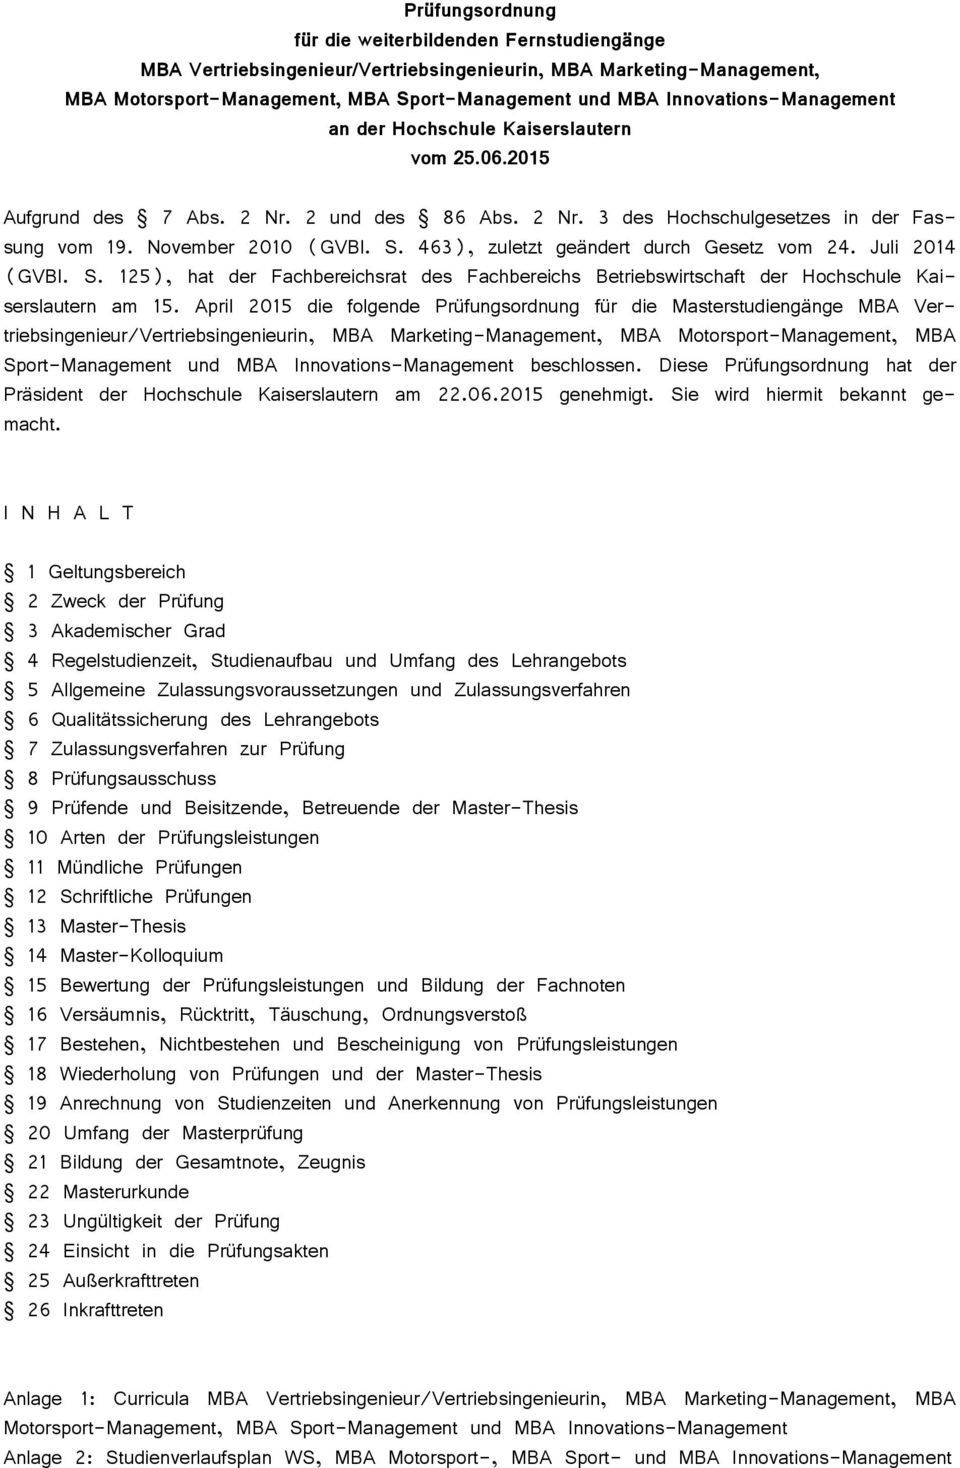 463), zuletzt geändert durch Gesetz vom 24. Juli 2014 (GVBl. S. 125), hat der Fachbereichsrat des Fachbereichs Betriebswirtschaft der Hochschule Kaiserslautern am 15.